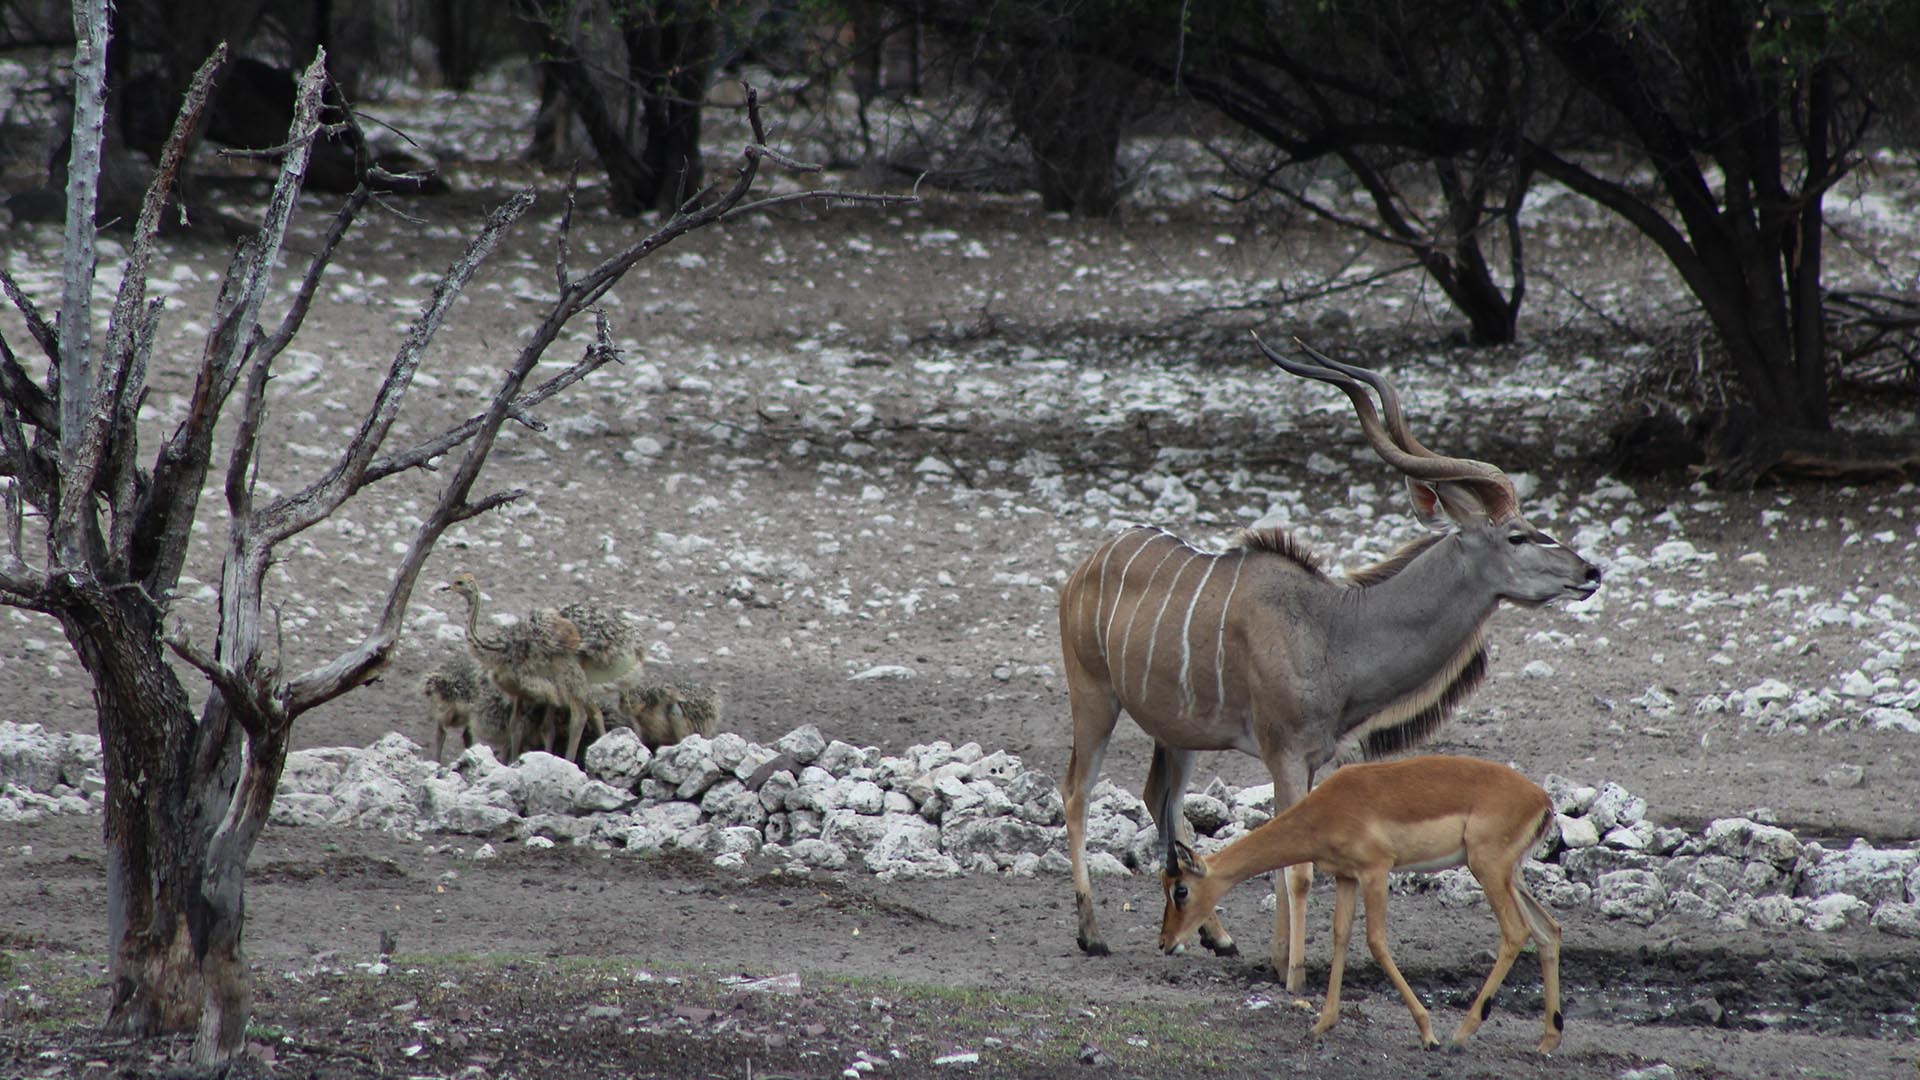 Kudu and springbok